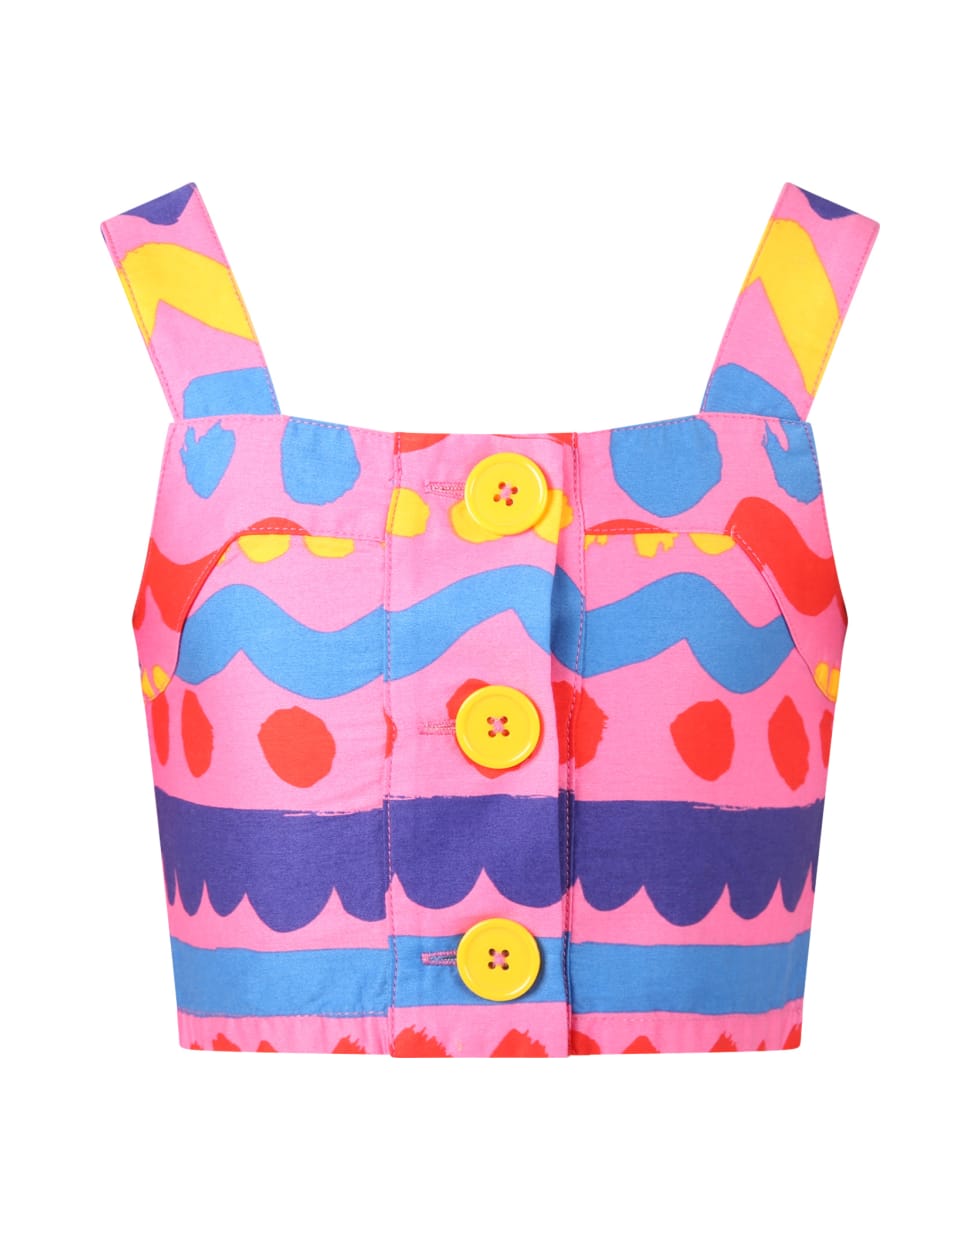 Stella McCartney Kids Fuchsia Top For Girl With Multicolor Designs - Fuchsia